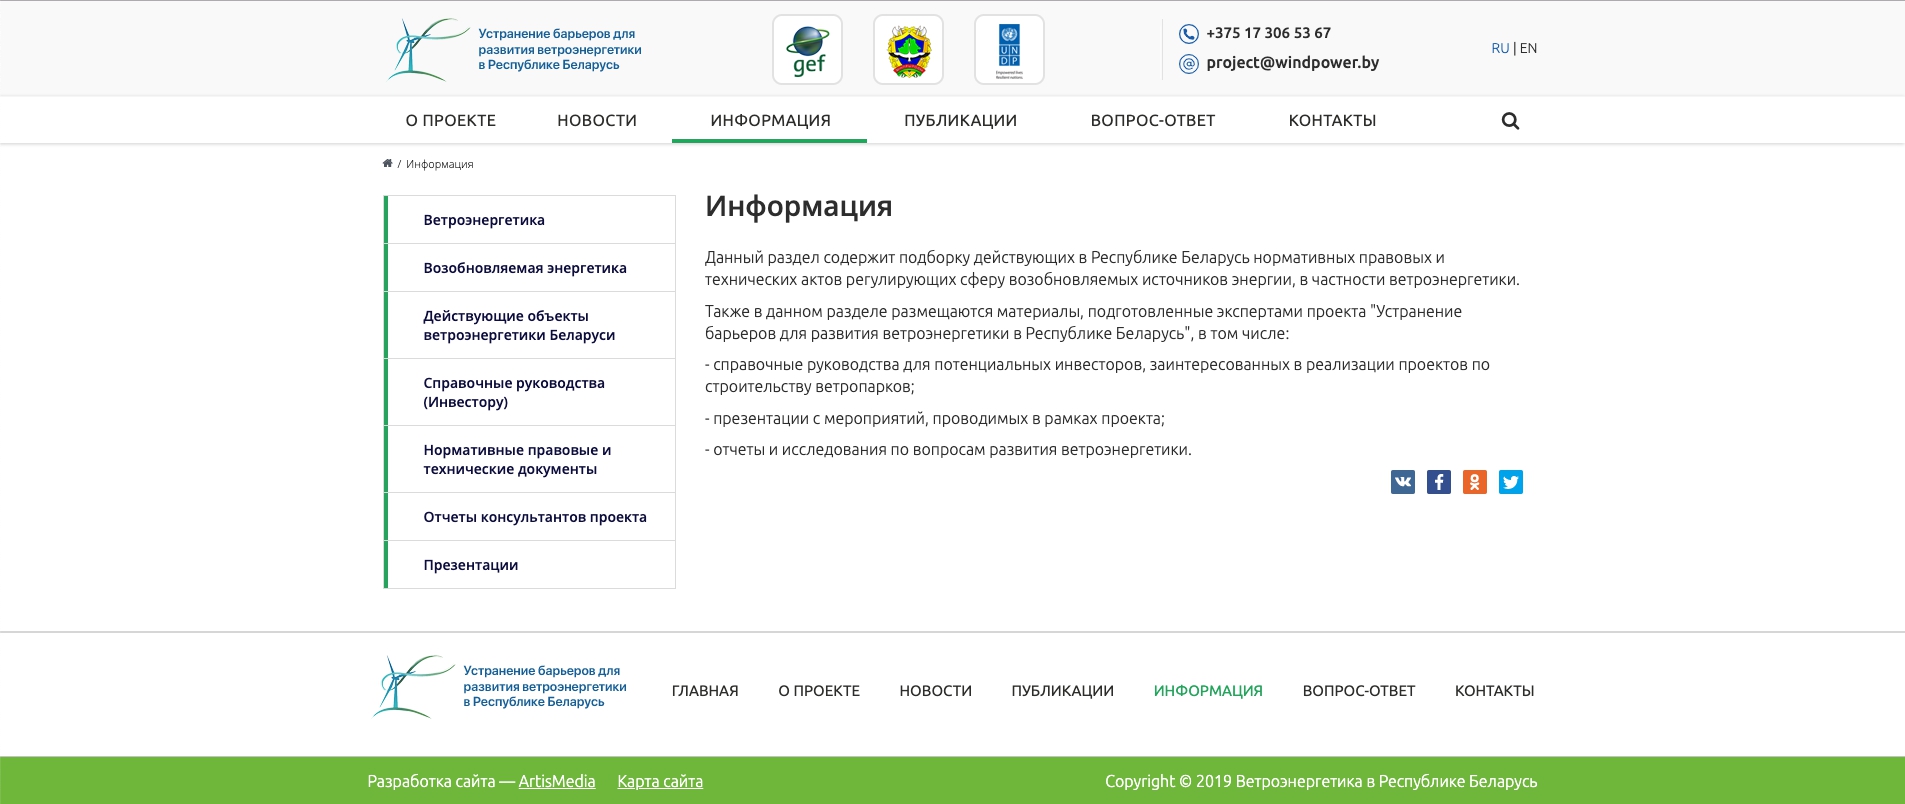 сайт министерство природных ресурсов и охраны окружающей среды республики беларусь